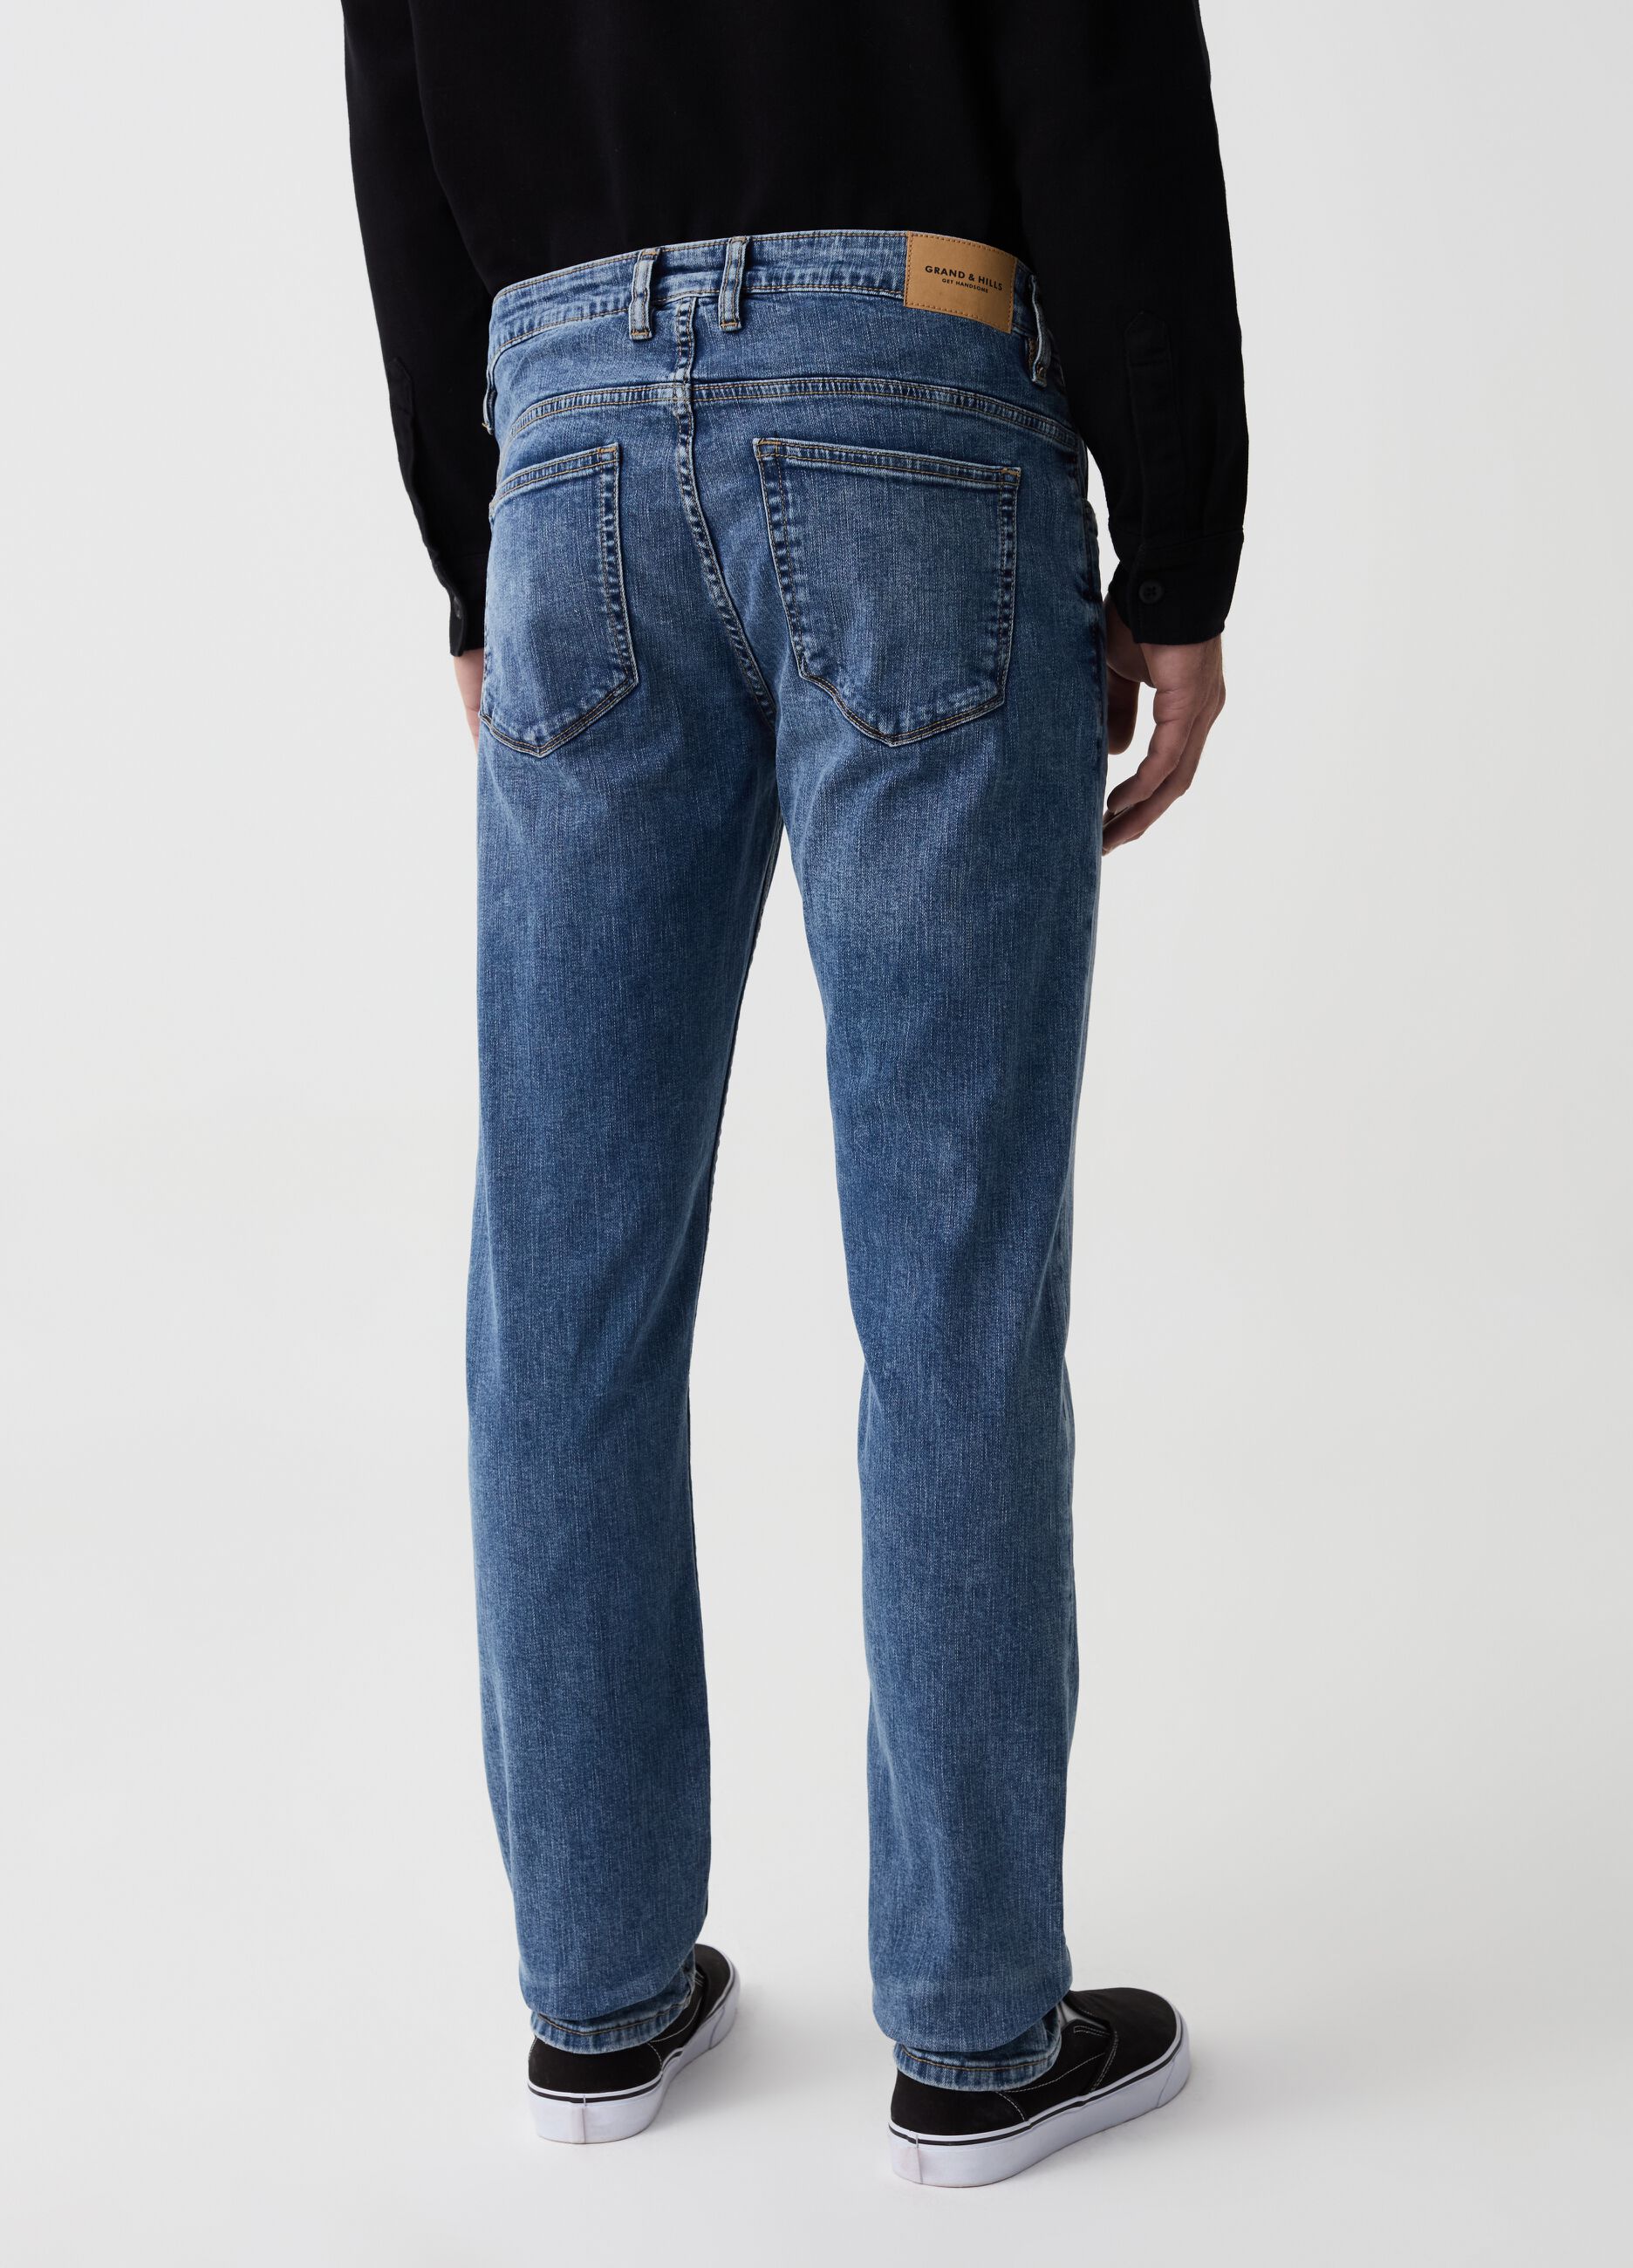 Jeans slim fit con abrasioni e scoloriture